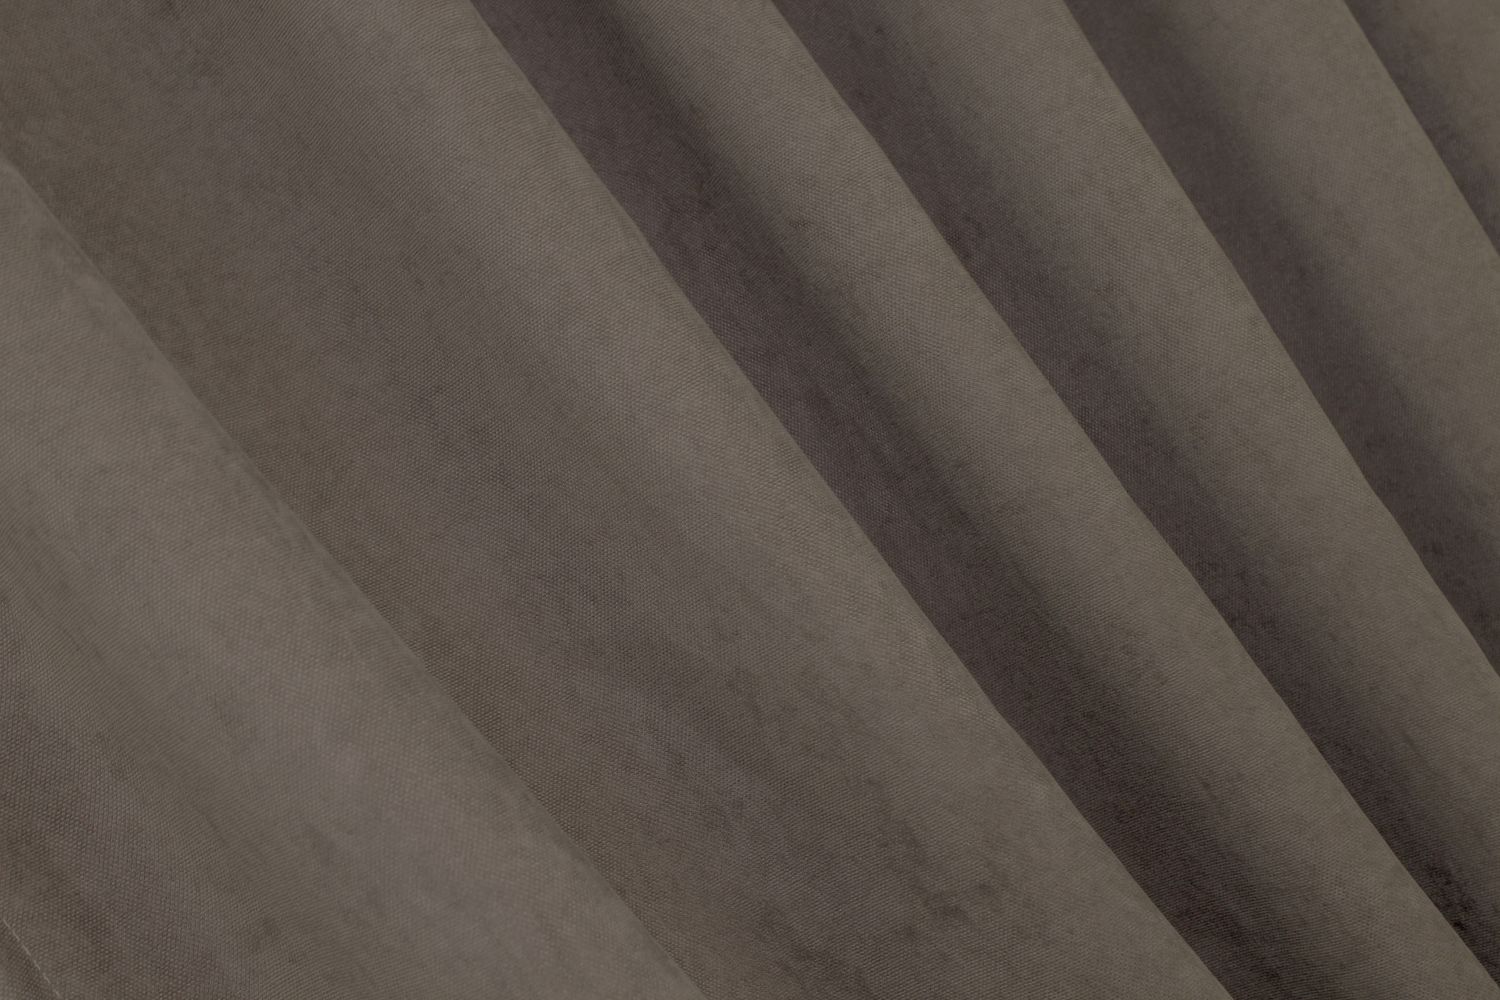 Комплект штор из ткани микровелюр SPARTA цвет какао 1035ш, Какао, Комплект штор (2шт. 1,5х2,85м.), Классические, Без ламбрекена, Длинные, 1,5 м., 2,85 м., 150, 285, 2 - 3 м., В комплекте 2 шт., Тесьма